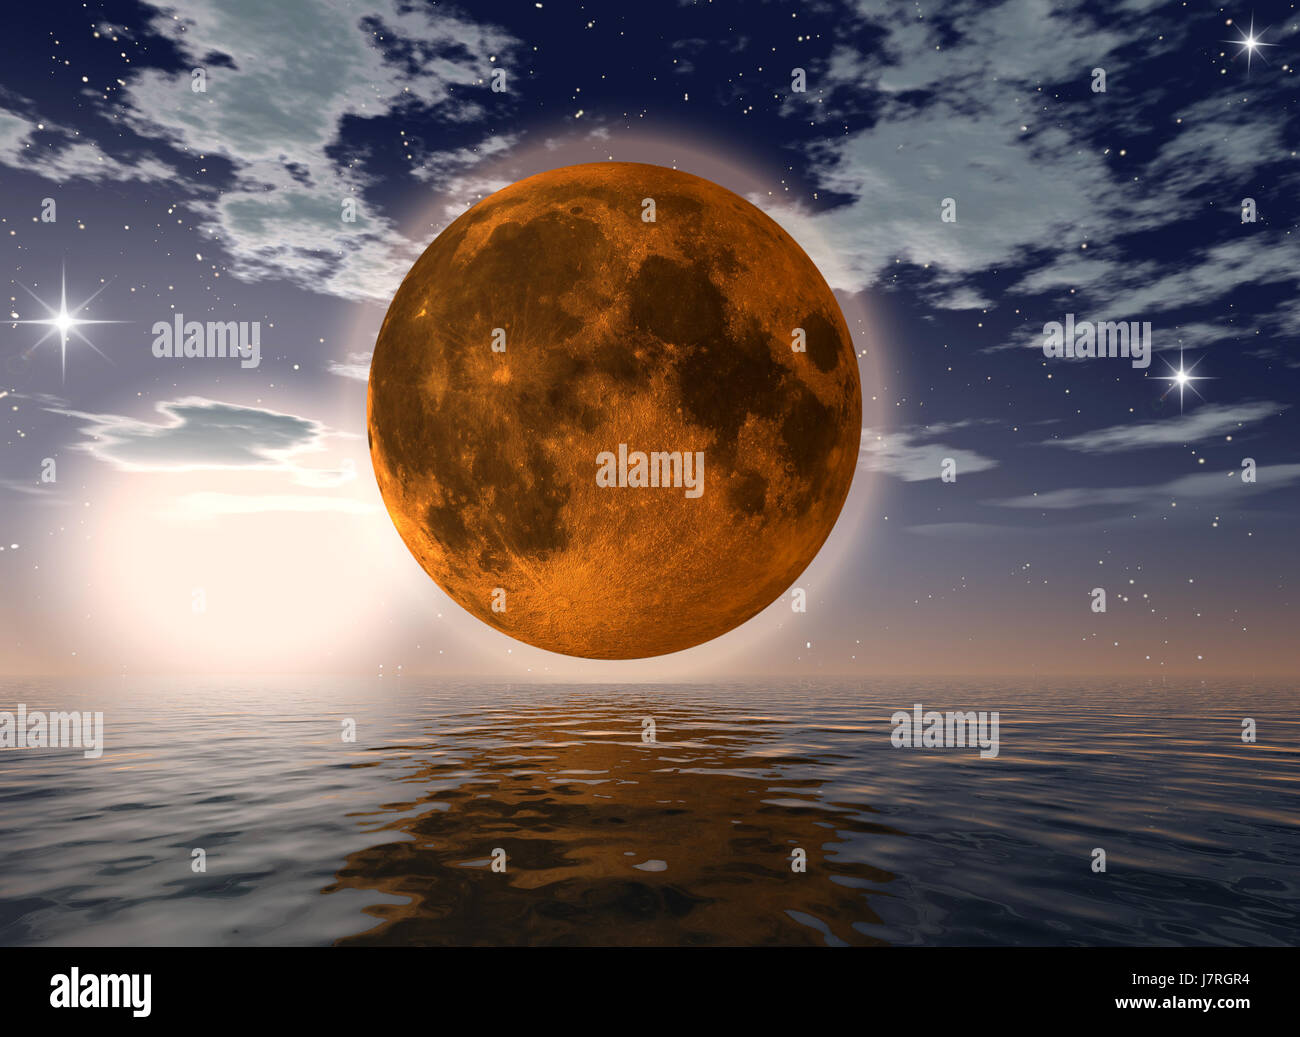 Luna llena de fantasía planeta planeta tierra mundo firmamento cielo mar océano de agua salada Foto de stock